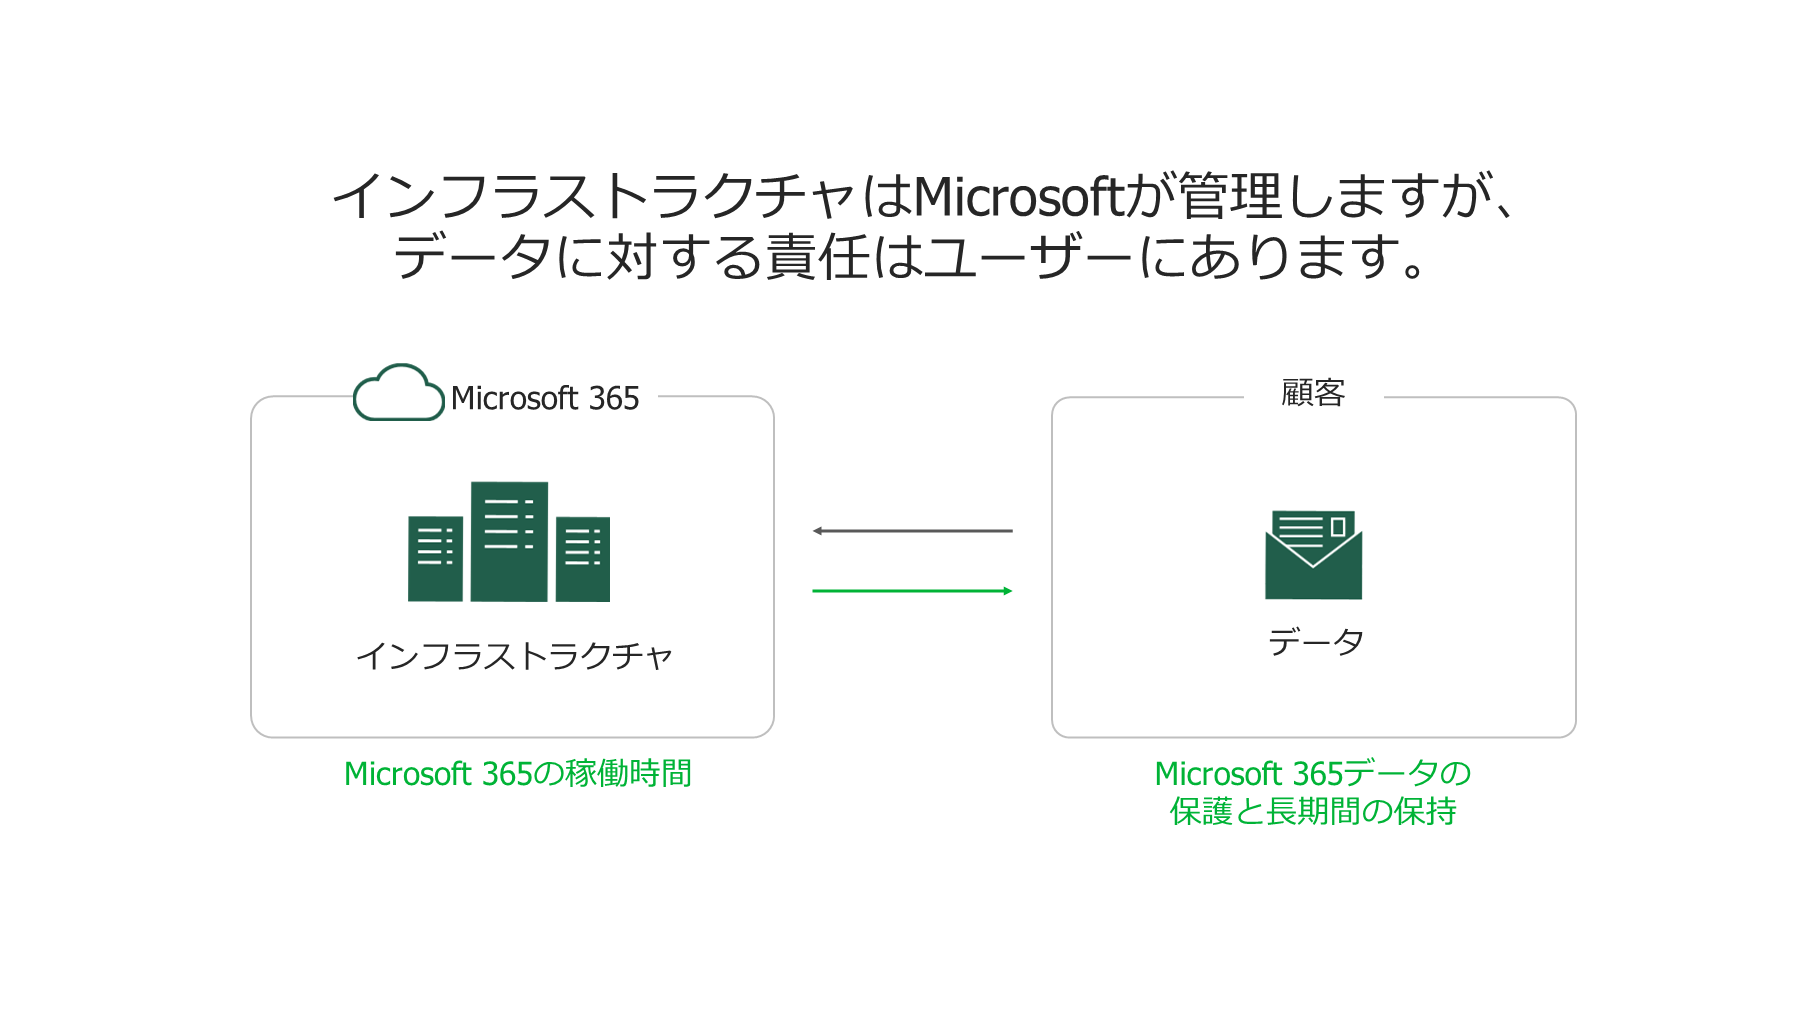 Microsoft 365のバックアップ図